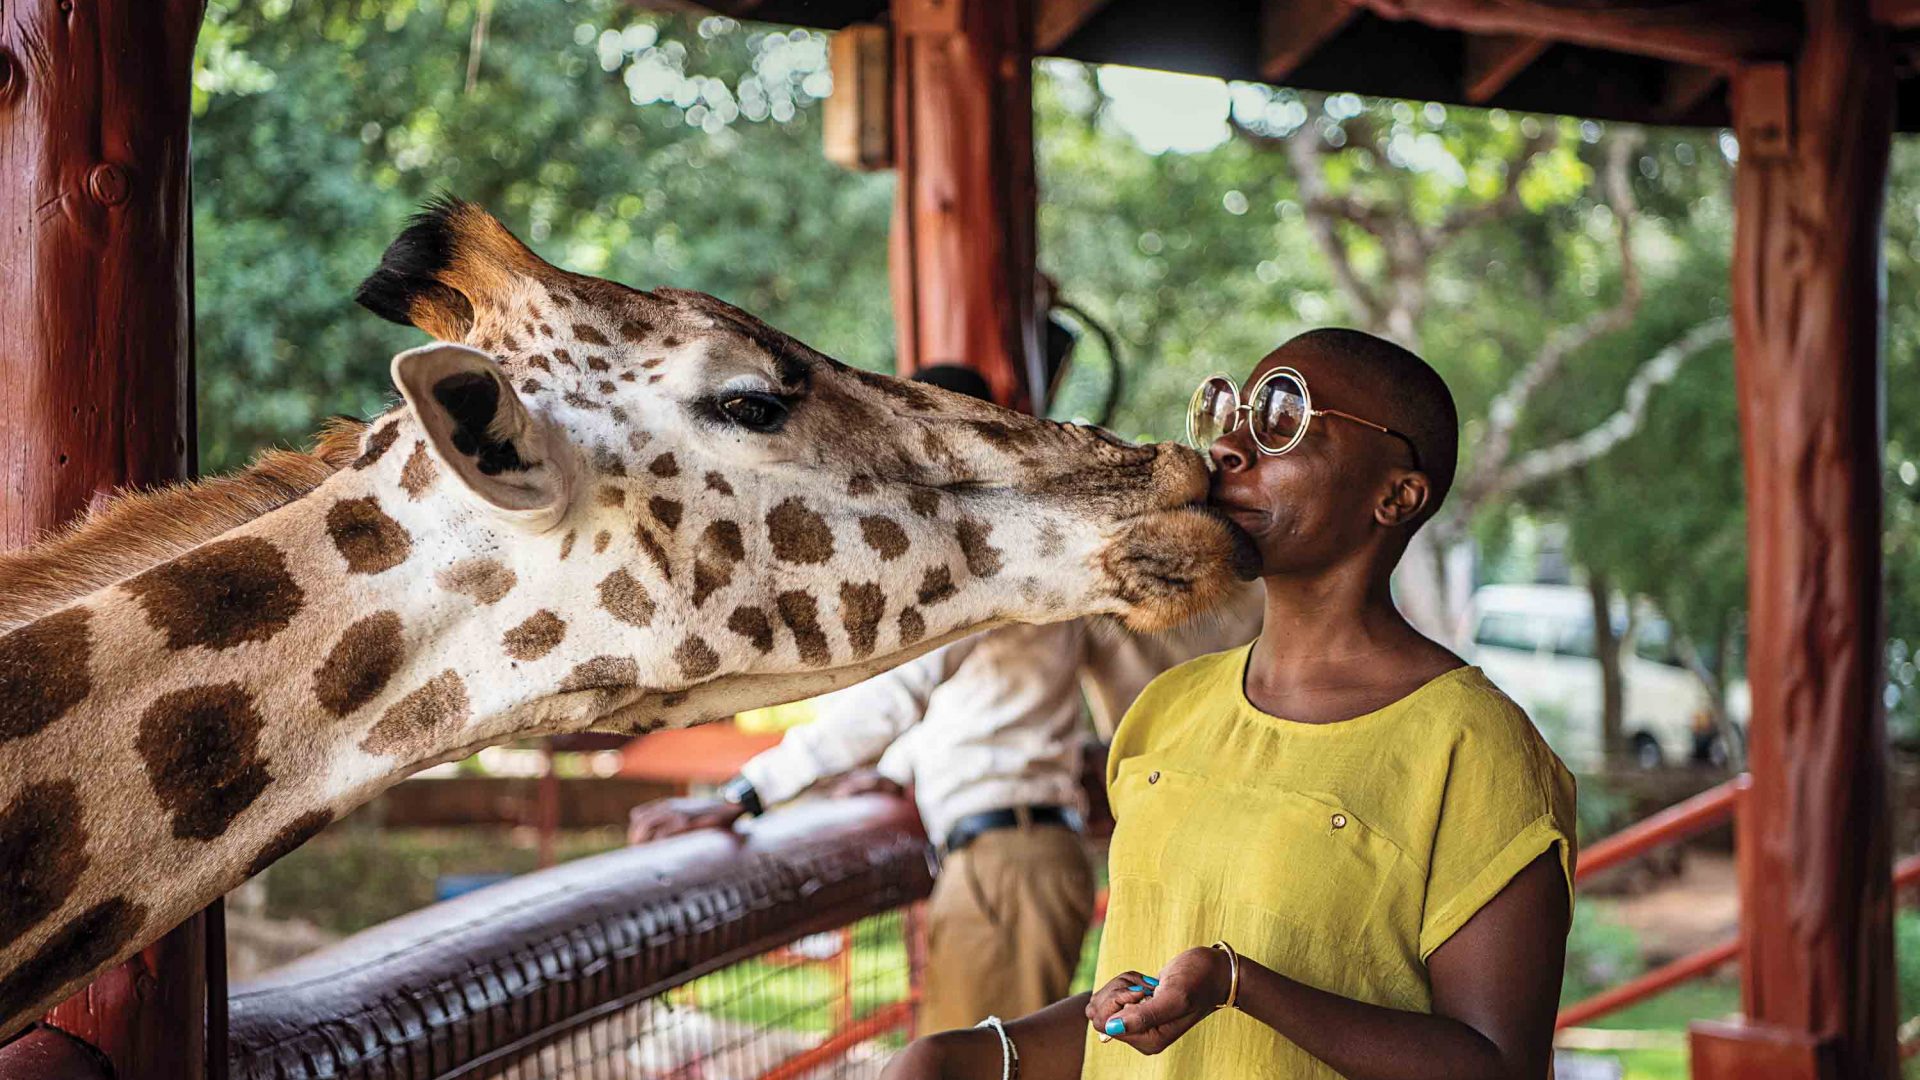 A giraffe sniffs Jessica's face.